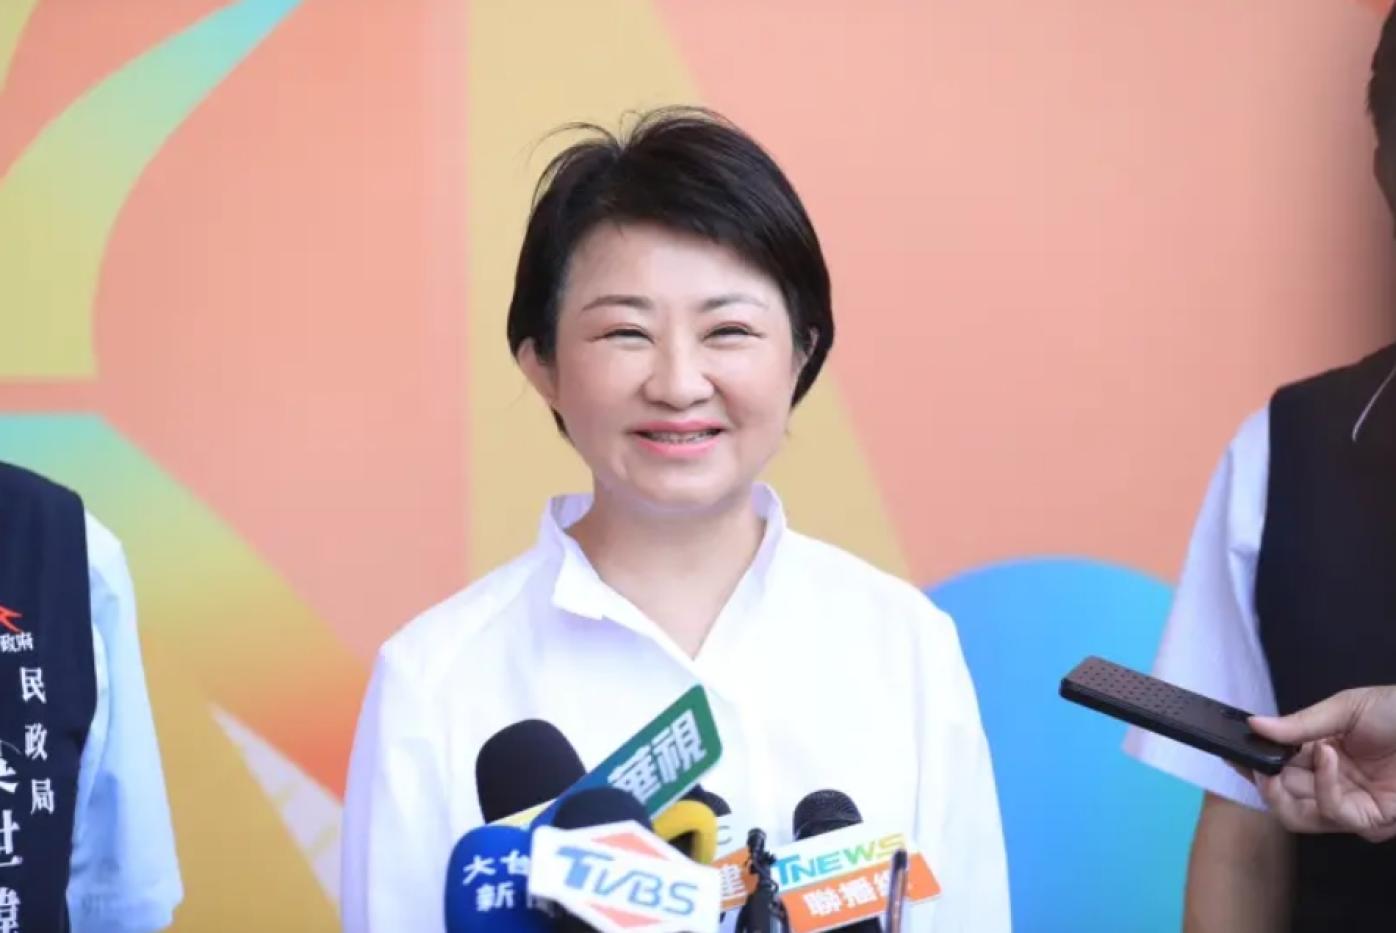 盧秀燕被問到柯文哲預測她與韓國瑜是國民黨2028總統人選，笑著說「謝謝柯主席抬愛」。台中市政府提供